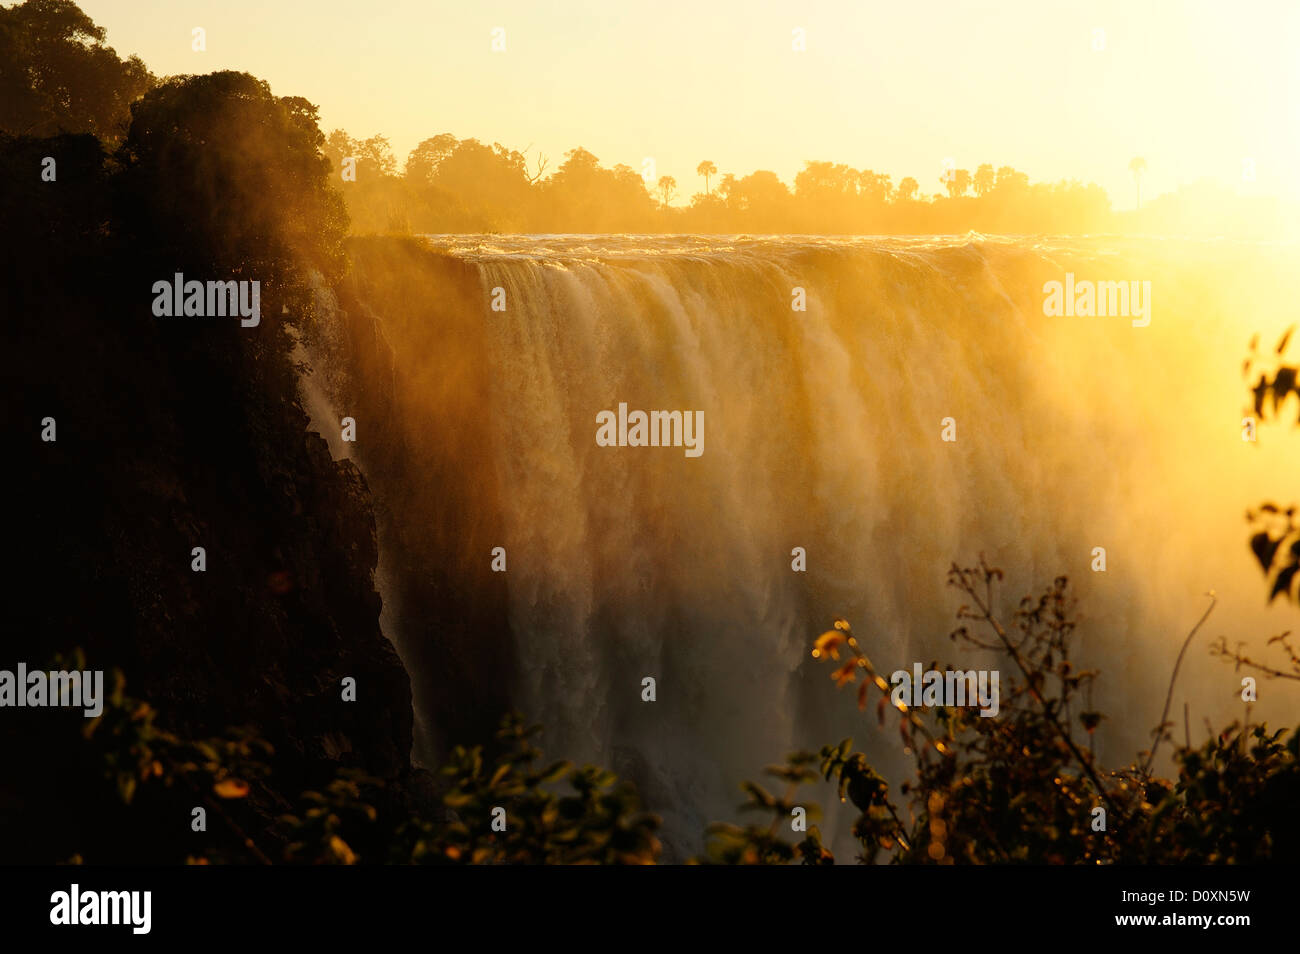 L'Afrique, le Zimbabwe, le Zambèze, fleuve, le sud de l'Afrique, les chutes Victoria, cascade, eau, canyon, gorge, soleil, coucher du soleil Banque D'Images